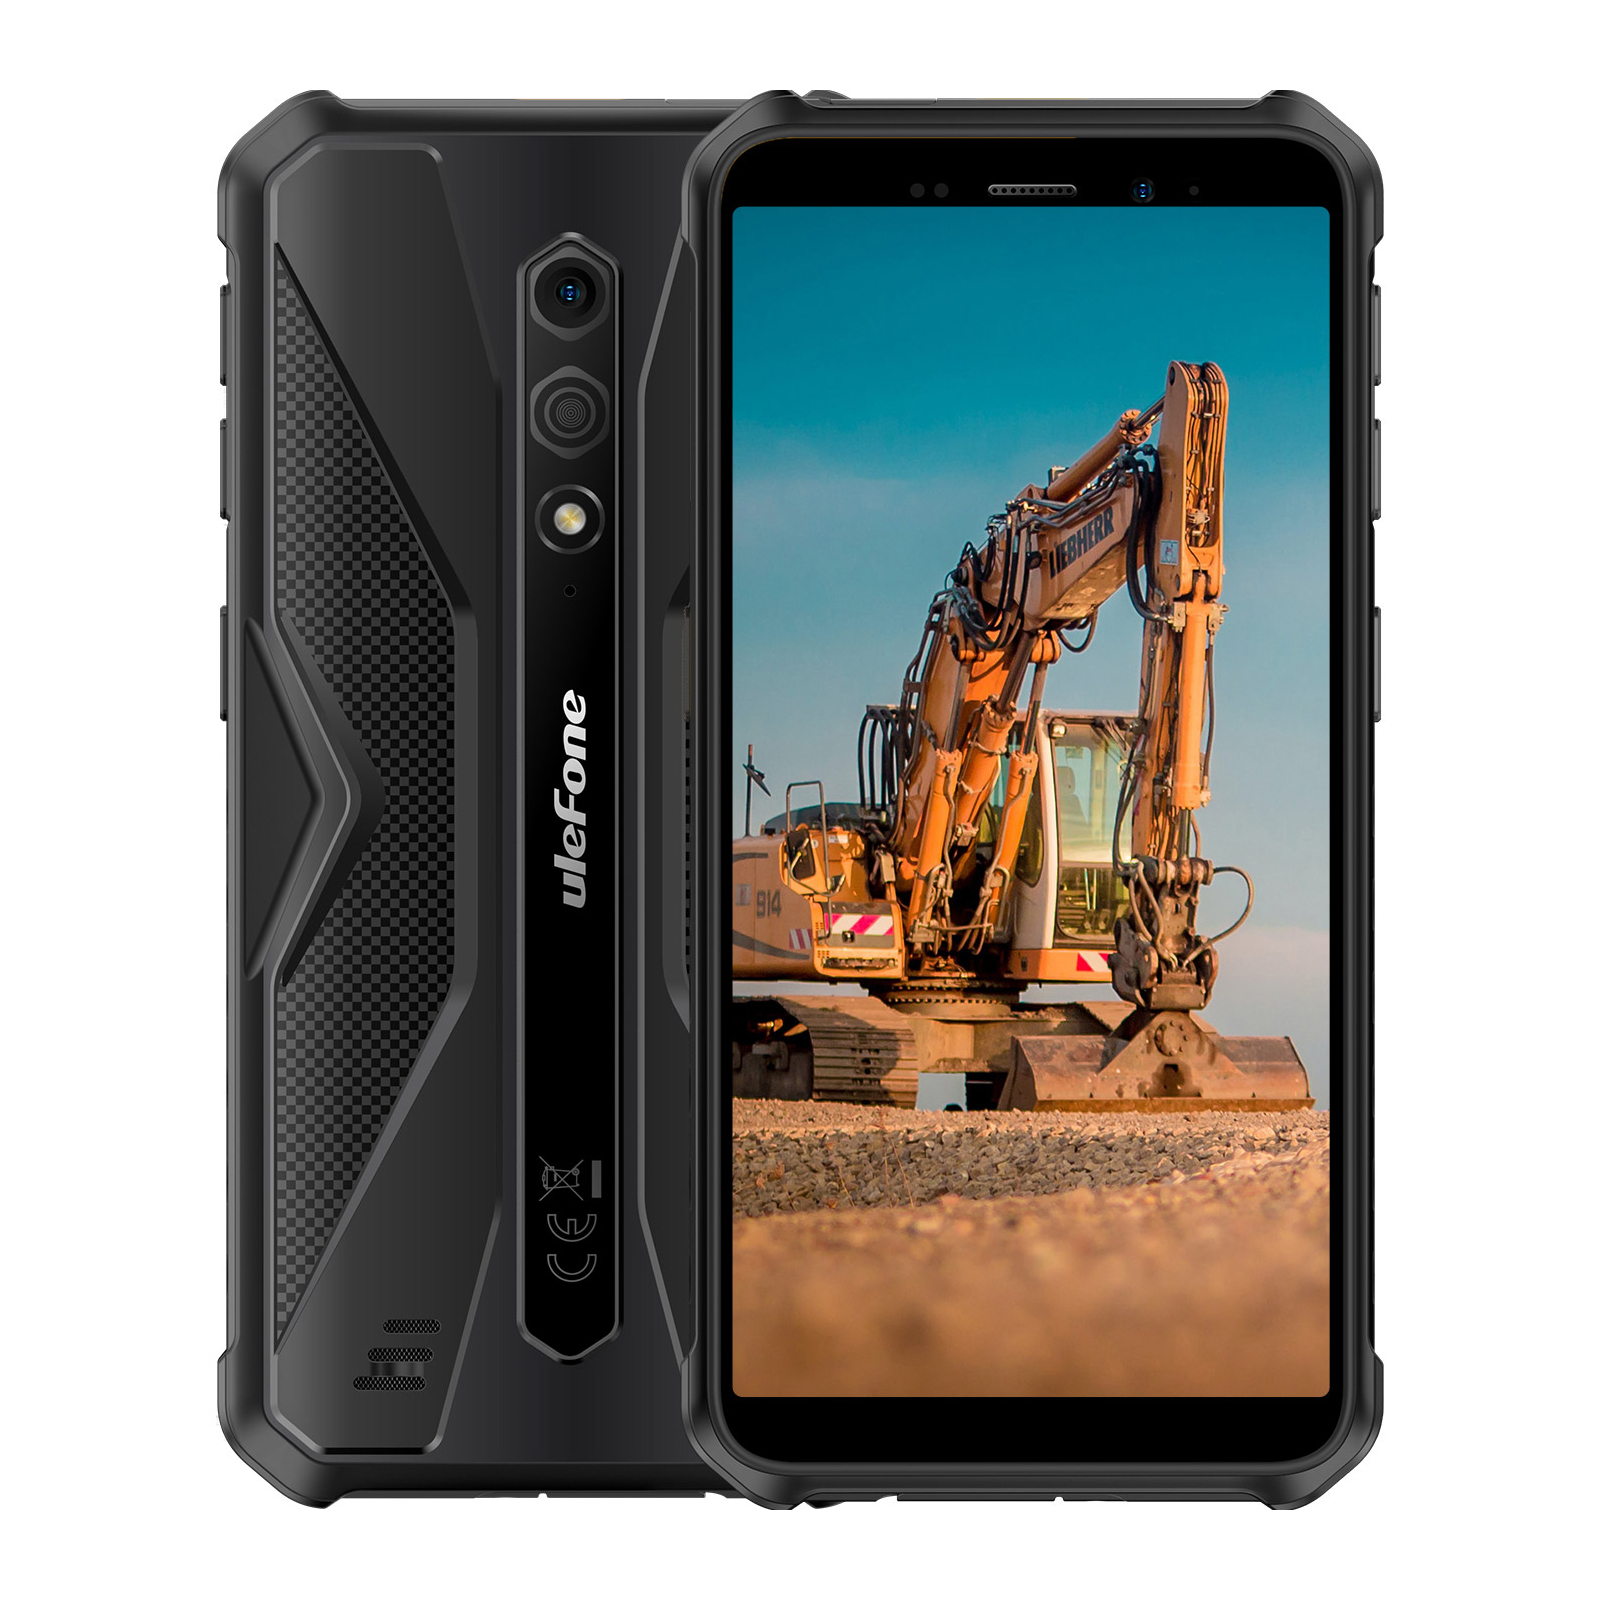 Мобильный телефон Ulefone Armor X12 3/32Gb Black Orange (6937748735625)